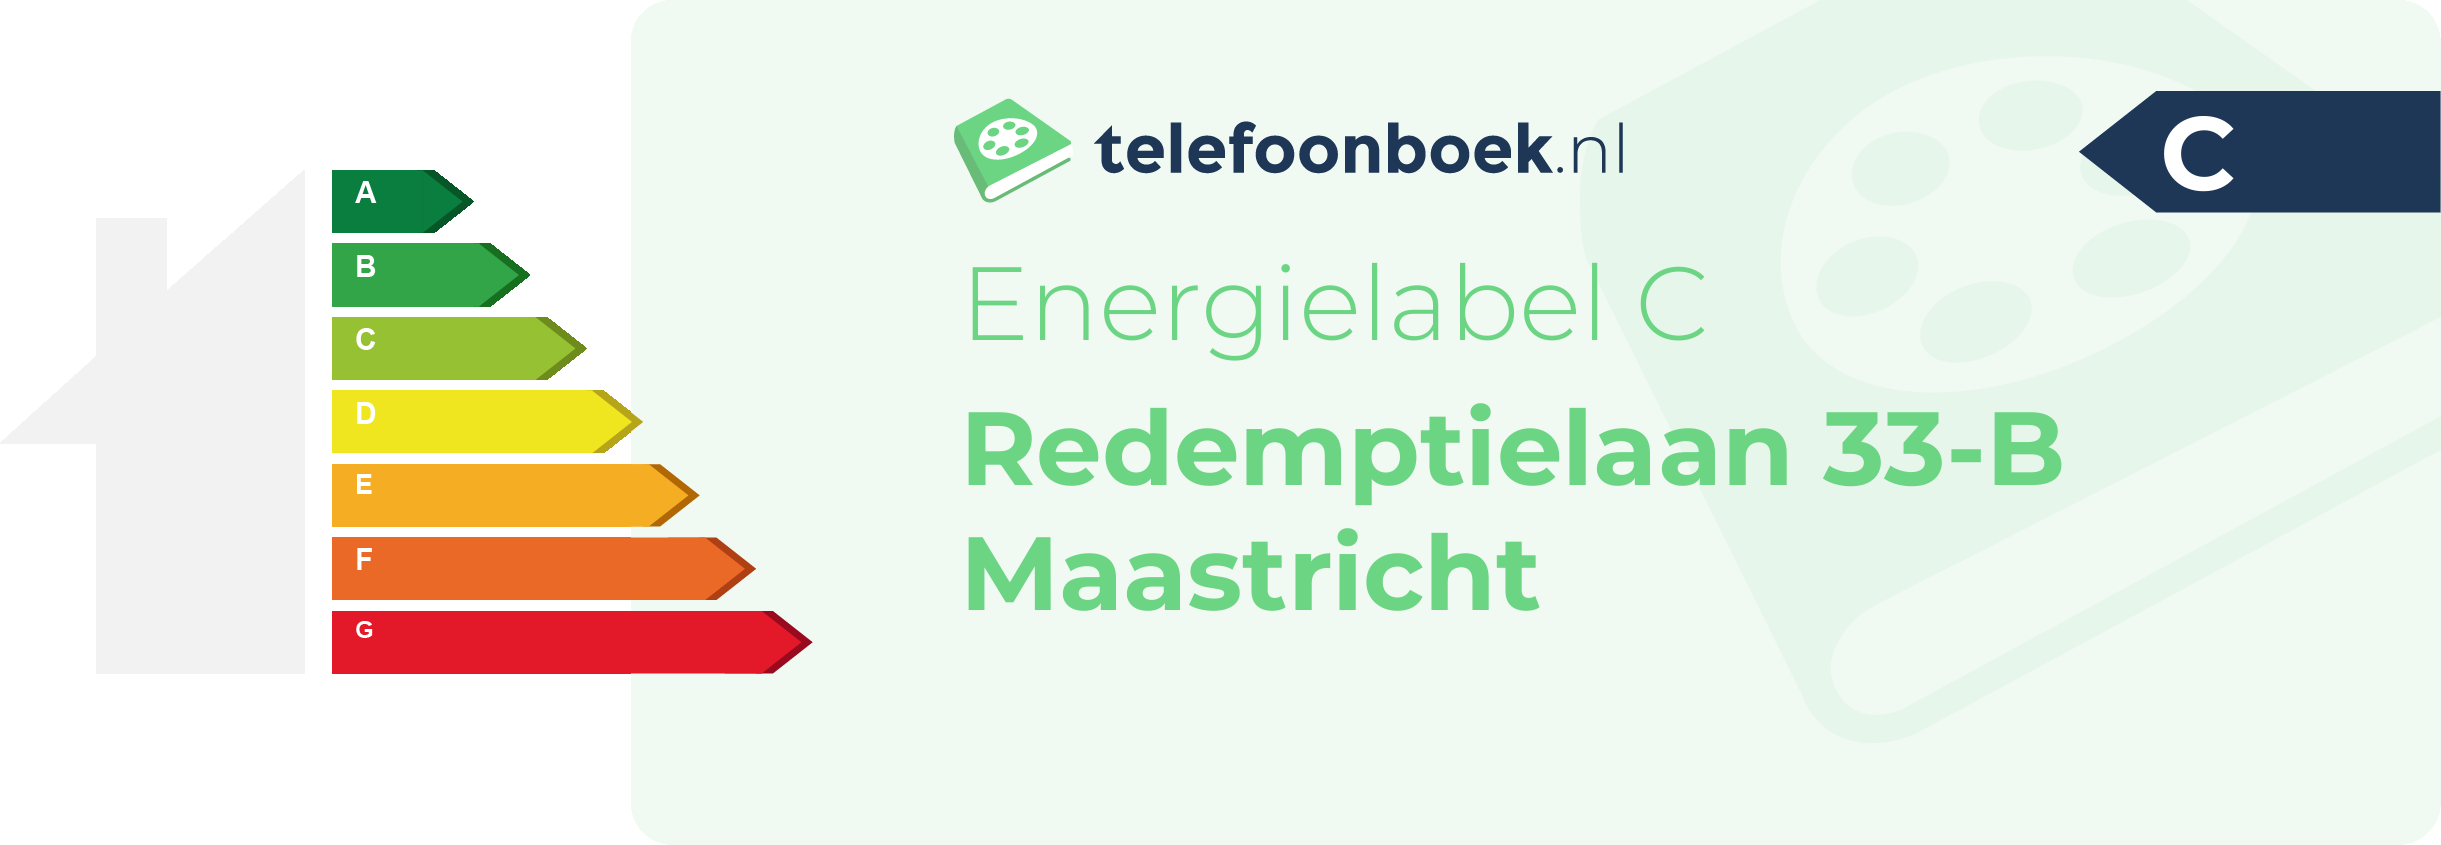 Energielabel Redemptielaan 33-B Maastricht